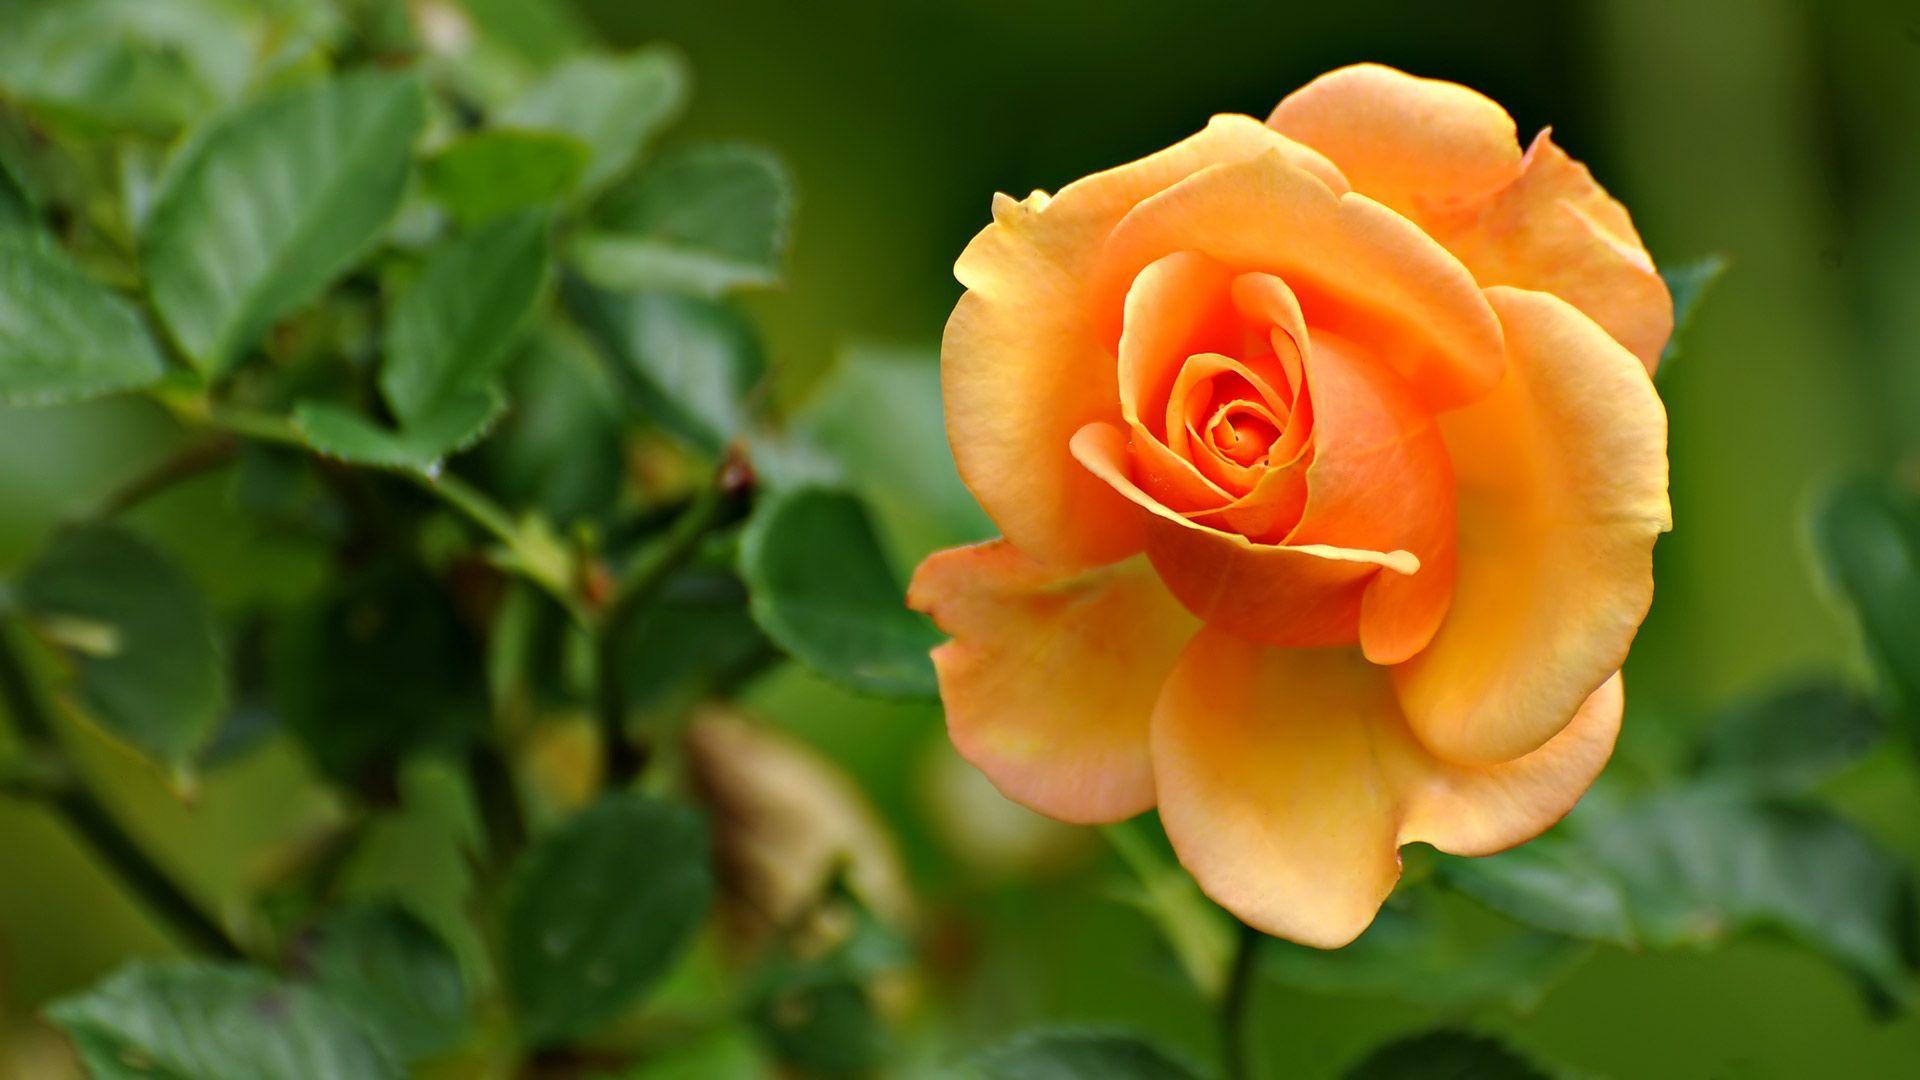 cliserpudo: Beautiful Rose Flowers HD Wallpaper For Desktop Image